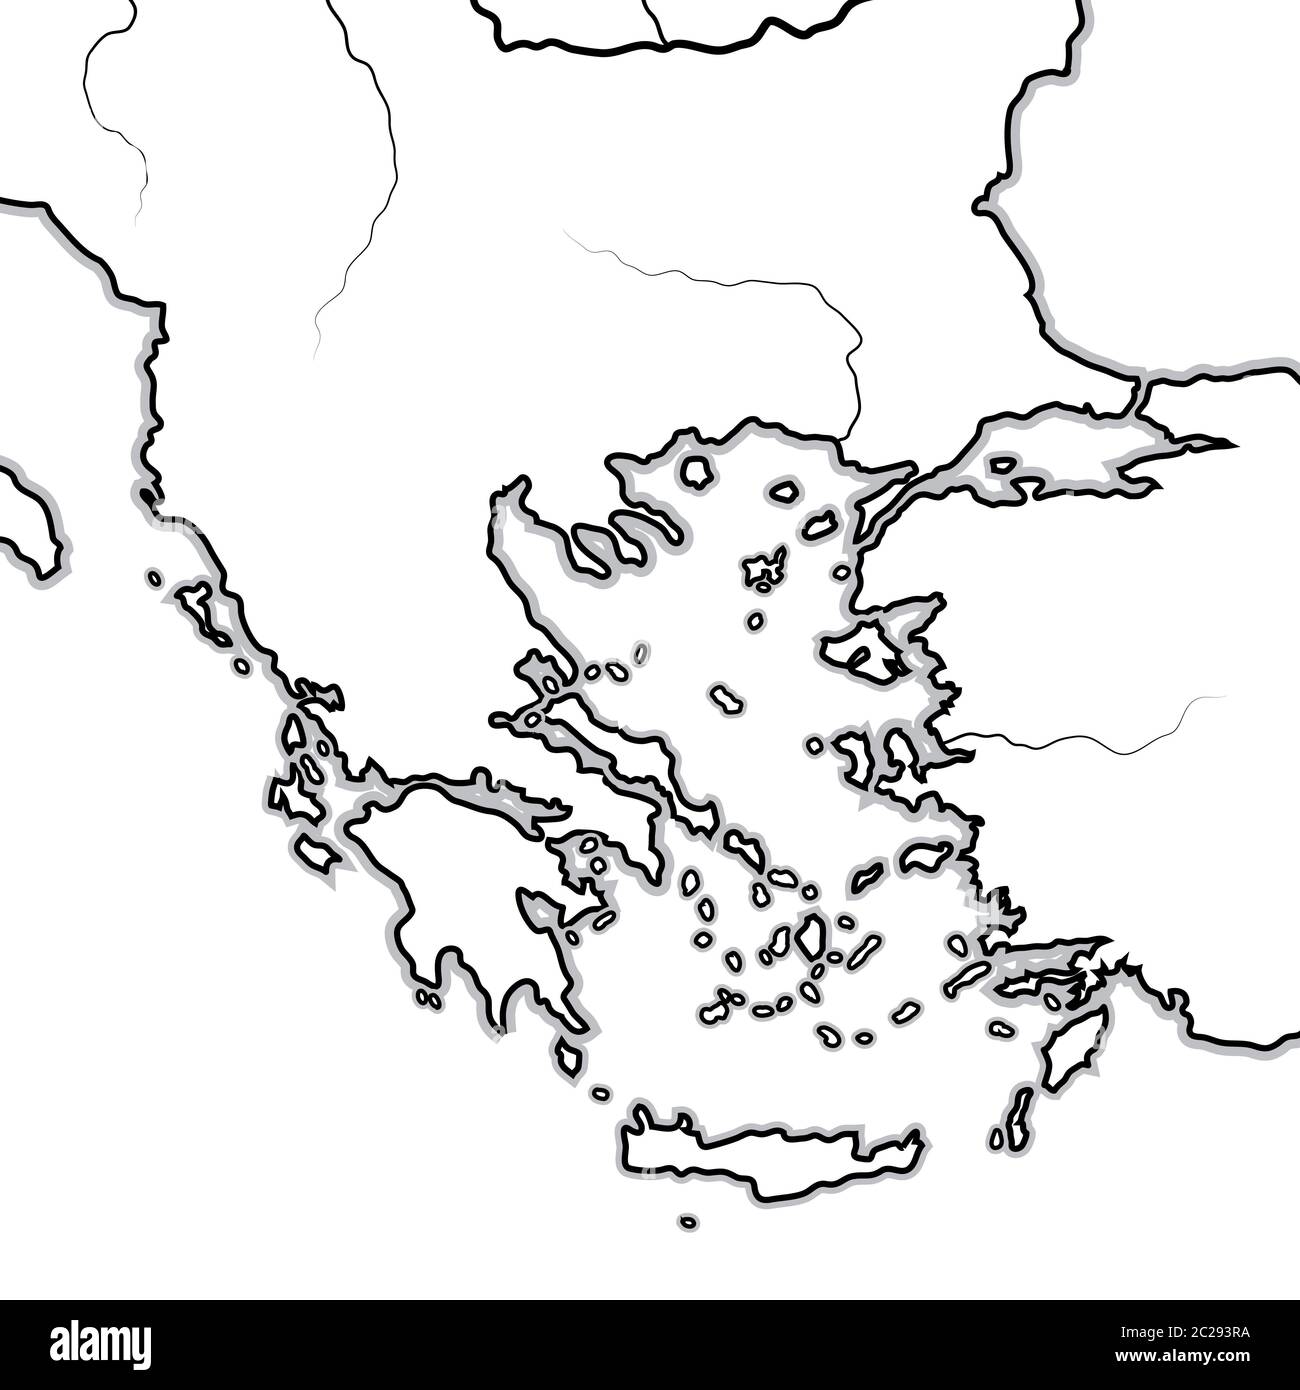 Mappa delle terre GRECHE: Grecia, Peloponneso, Tracia, Macedonia, Balcani, Mar Egeo. Grafico geografico. Foto Stock